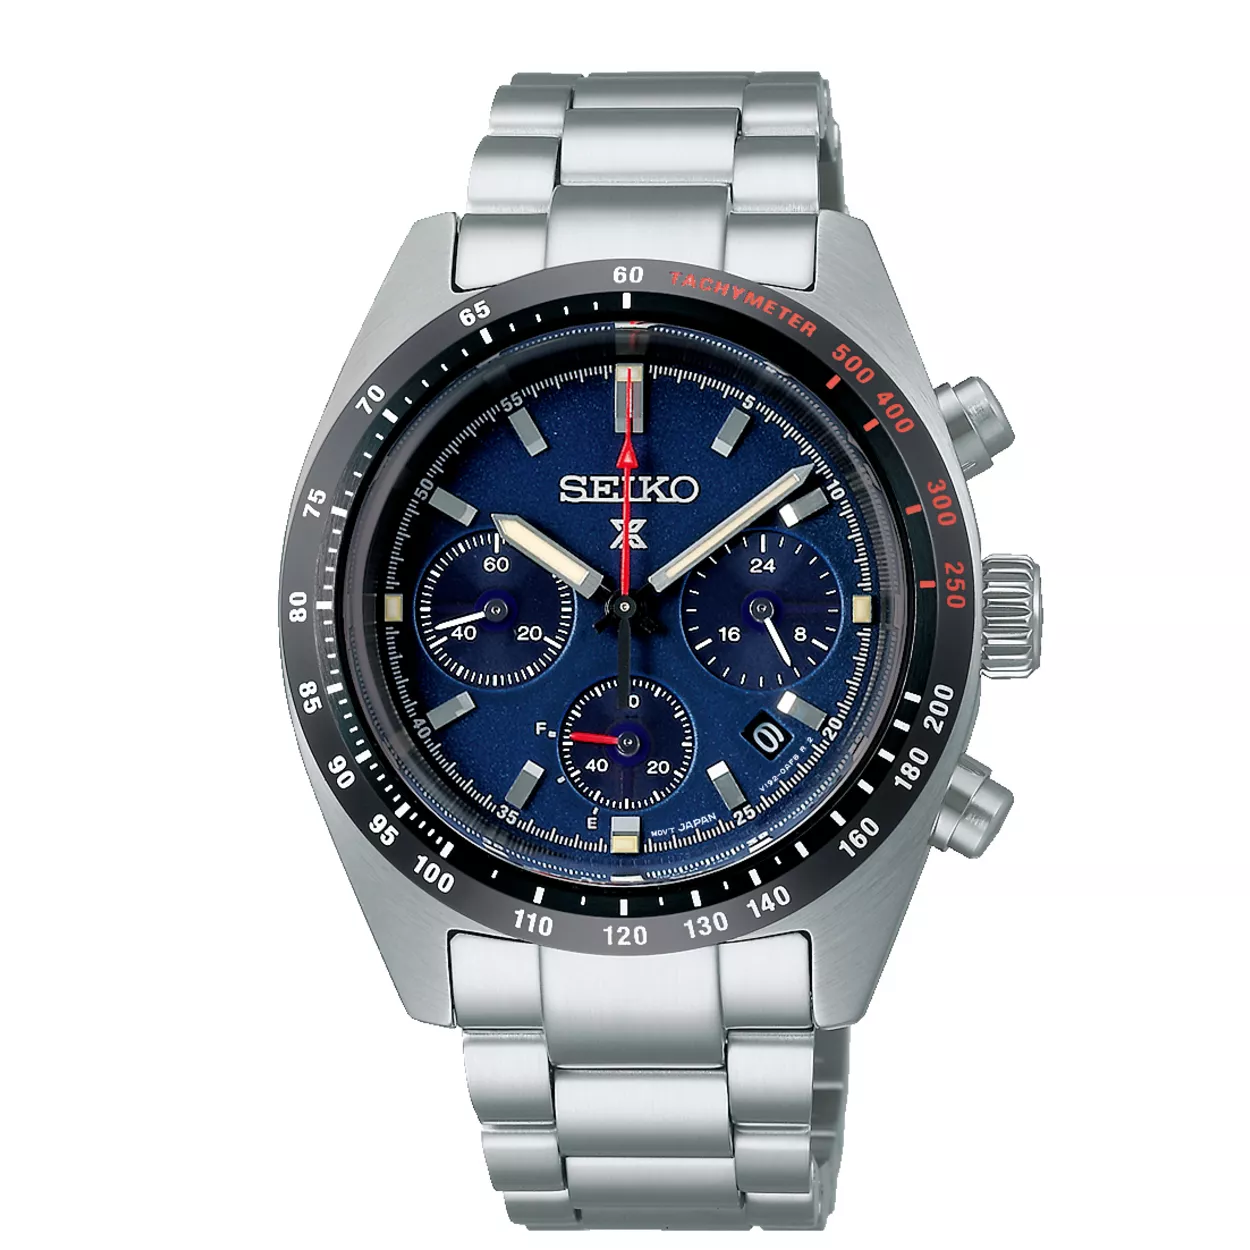 Seiko SSC815P1 horloge Prospex Solar Chronograaf staal zilverkleurig-blauw 39 mm 